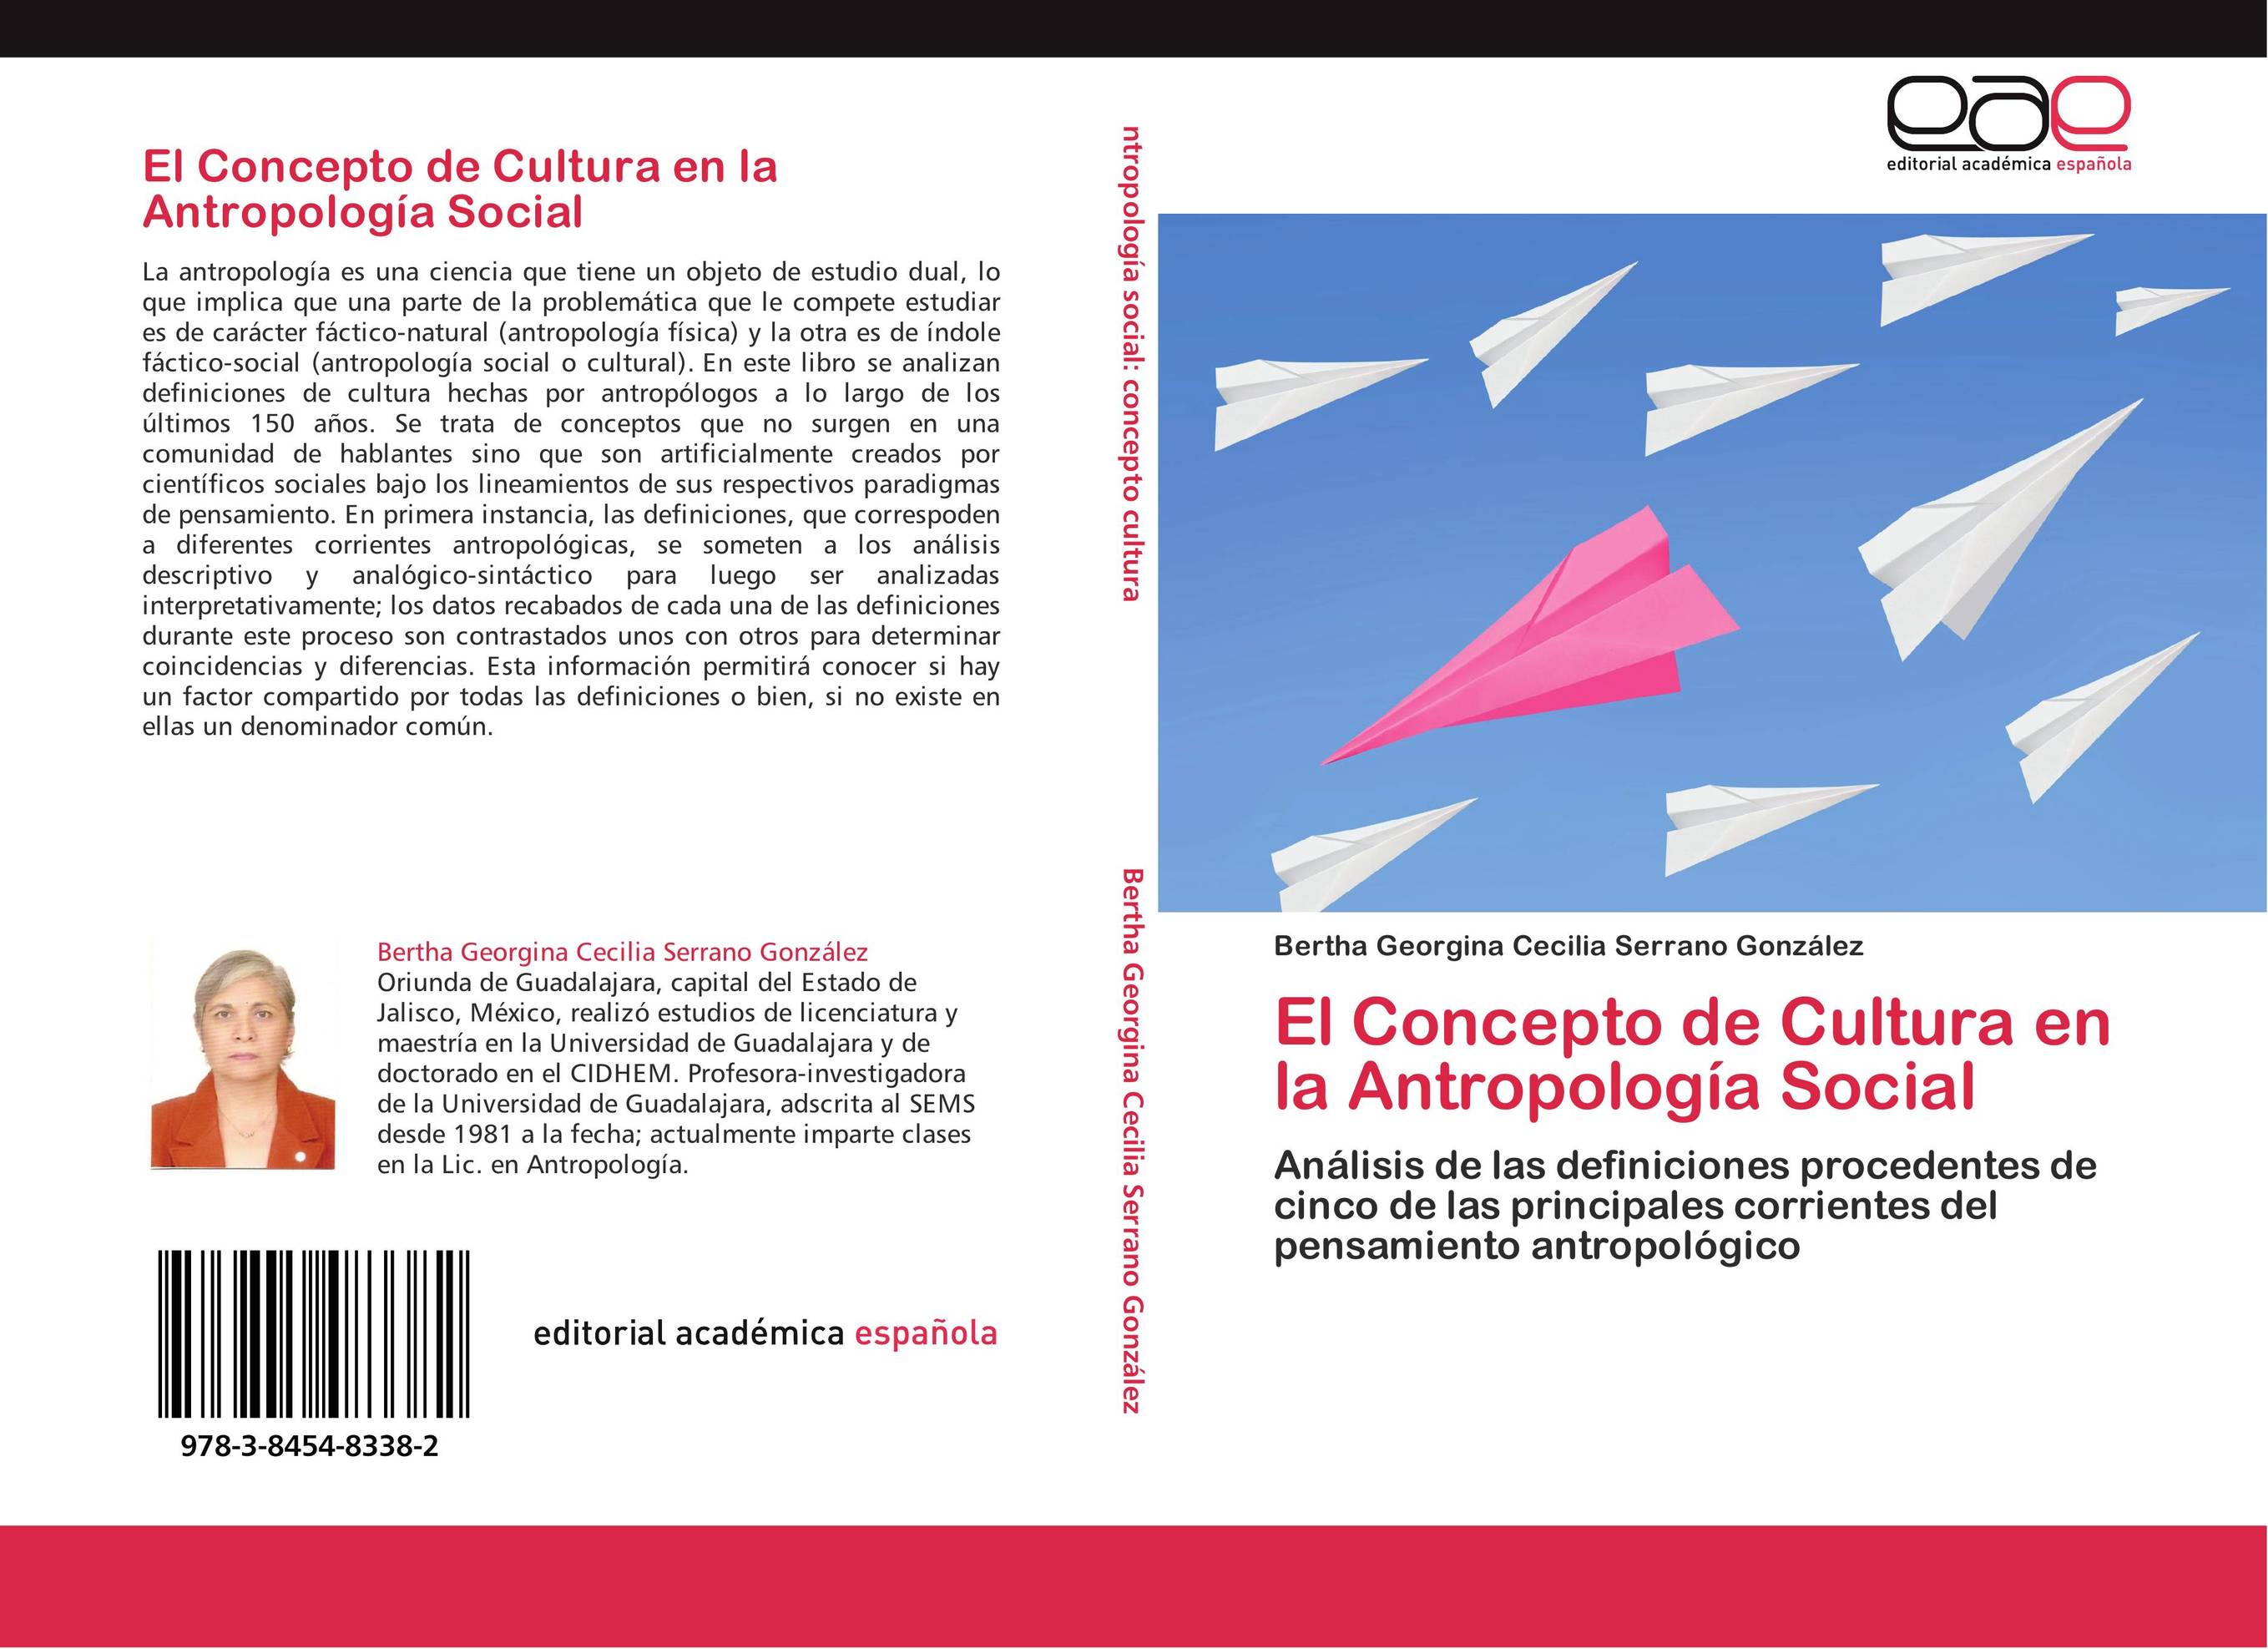 El Concepto de Cultura en la Antropología Social